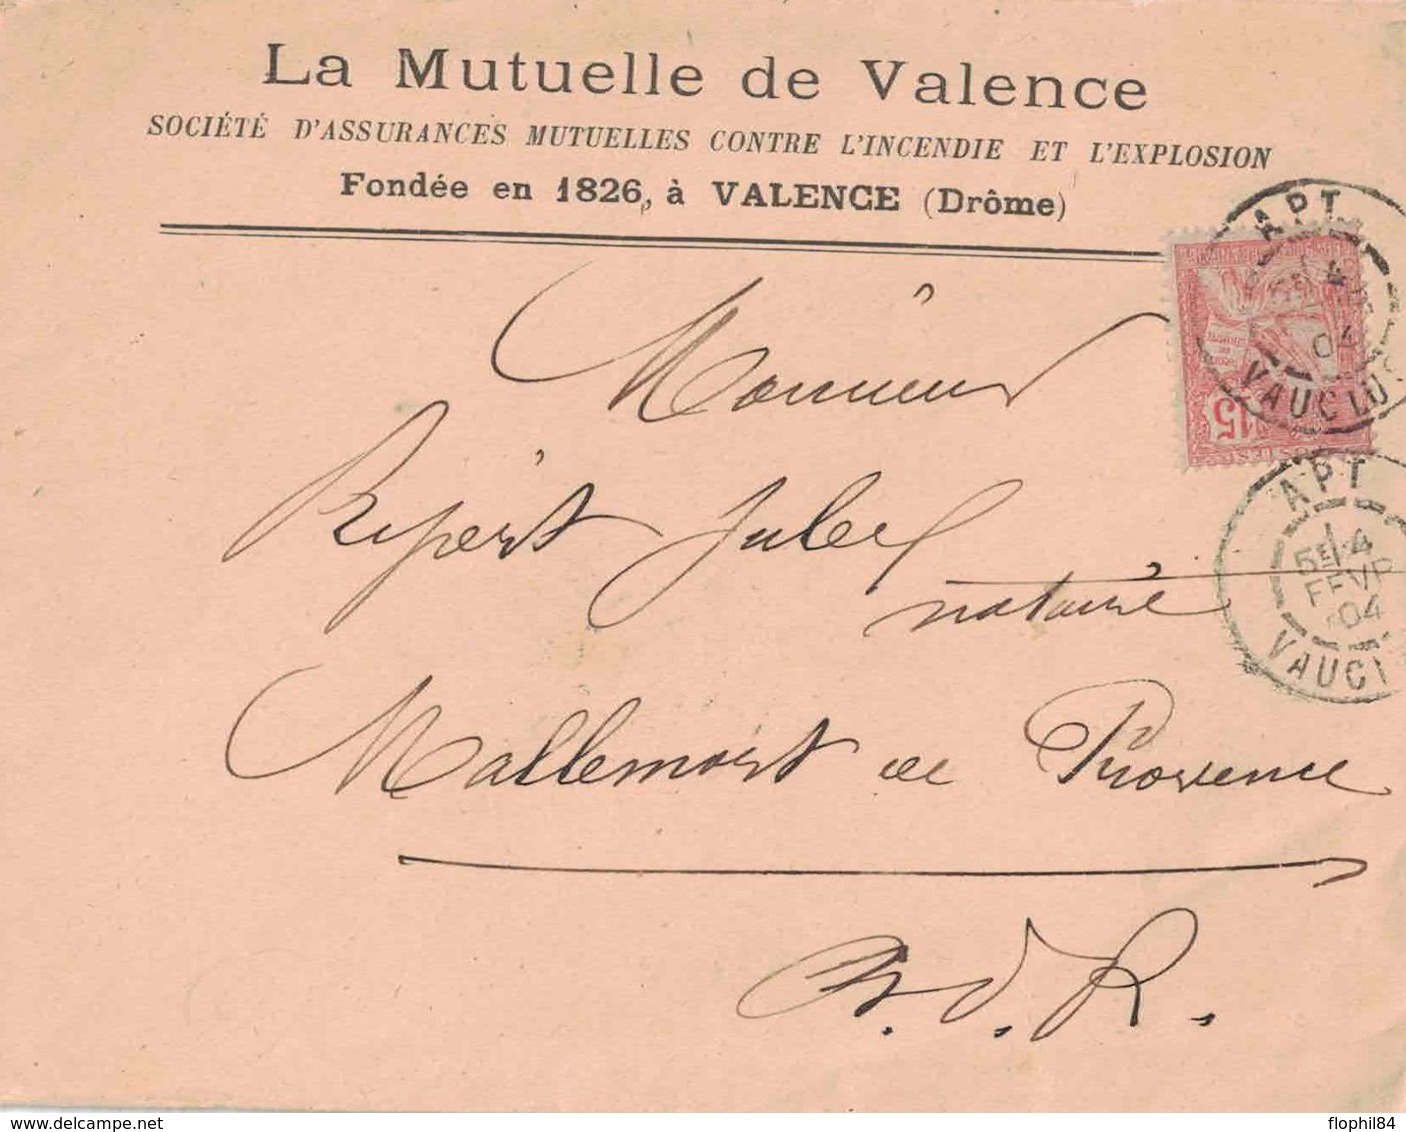 VAUCLUSE - APT - MUTUELLE DE VALENCE AGENCE D'APT 17 Bd NATIONAL - TYPE MOUCHON SUR ENVELOPPE DU 4-2-1904. - Banque & Assurance